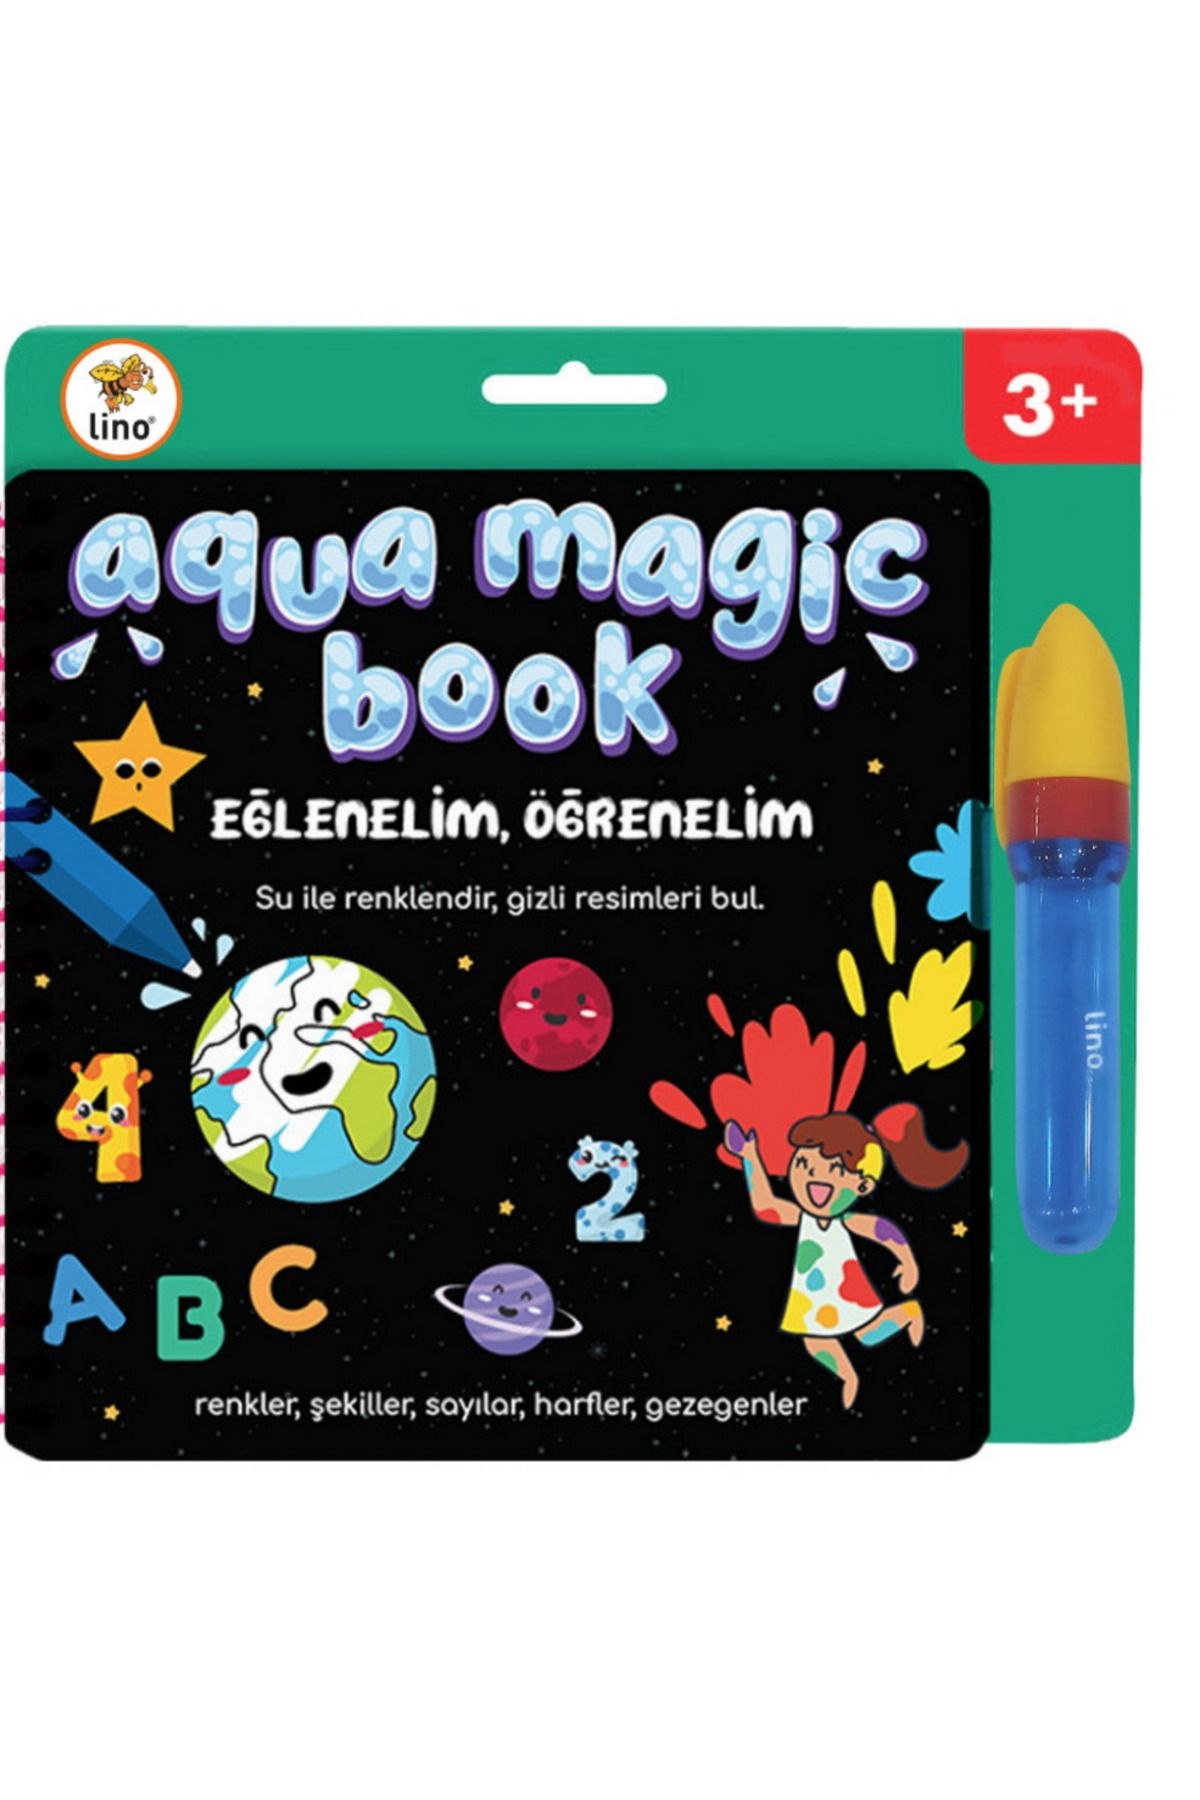 Lino Aqua Magic Book Eğlenelim, Öğrenelim (SİHİRLİ BOYAMA KİTABI) Tfl-1004